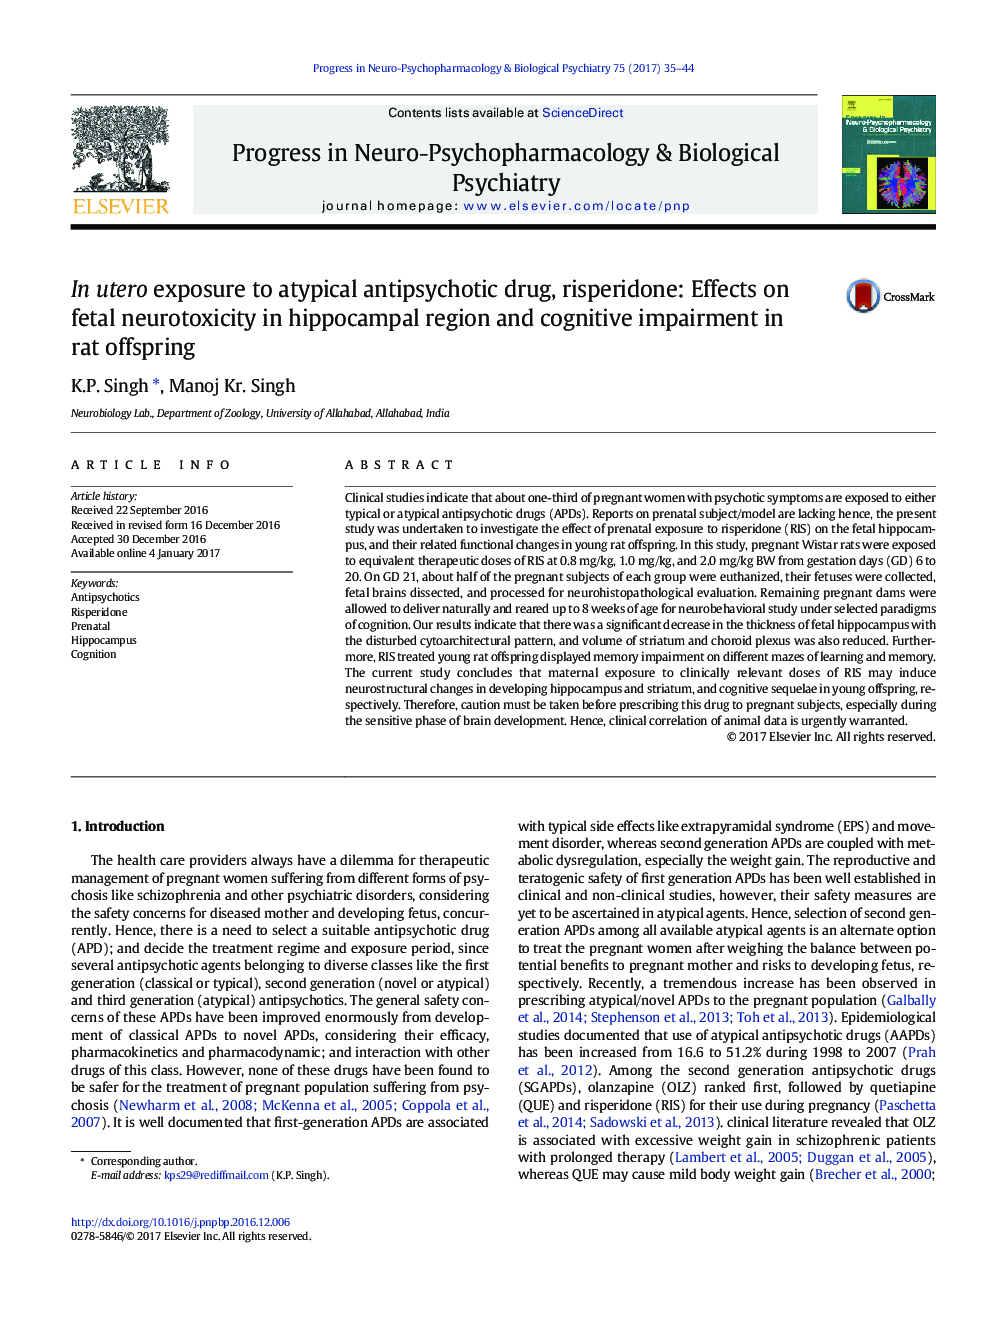 ریسپریدون در معرض داروهای ضد روان پریشی آتیپیک: اثرات عصبی جنین در ناحیه هیپوکامپ و اختلال شناختی در فرزندان موش صحرایی 